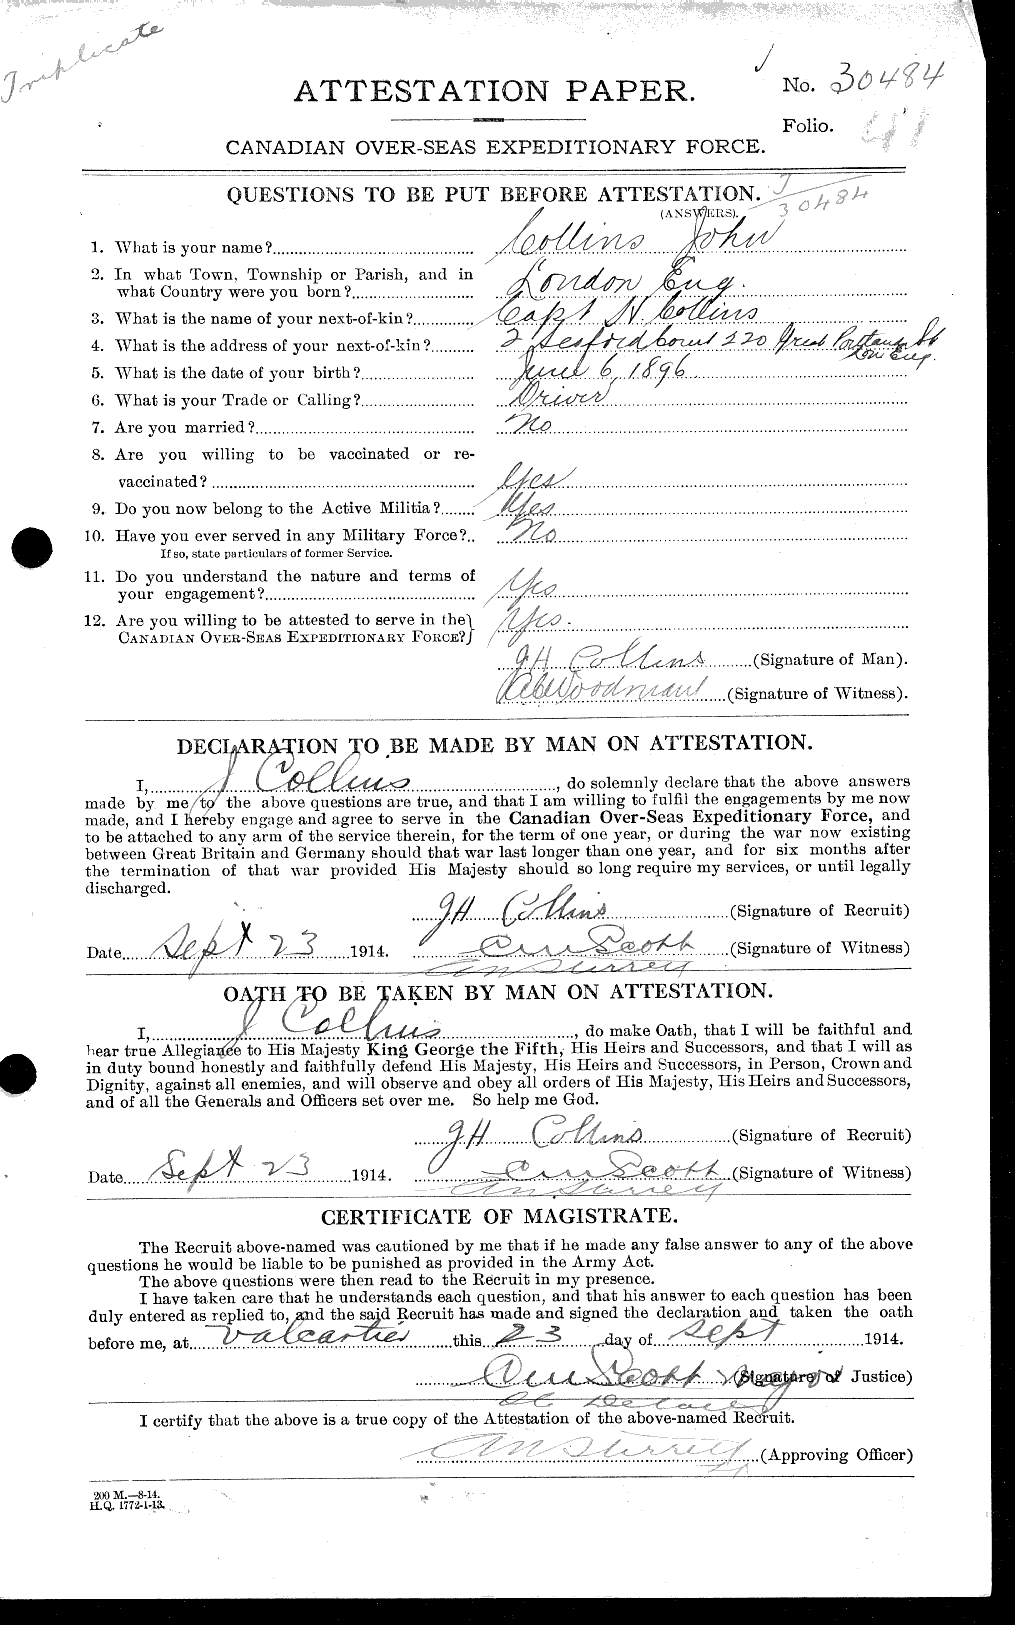 Dossiers du Personnel de la Première Guerre mondiale - CEC 037967a